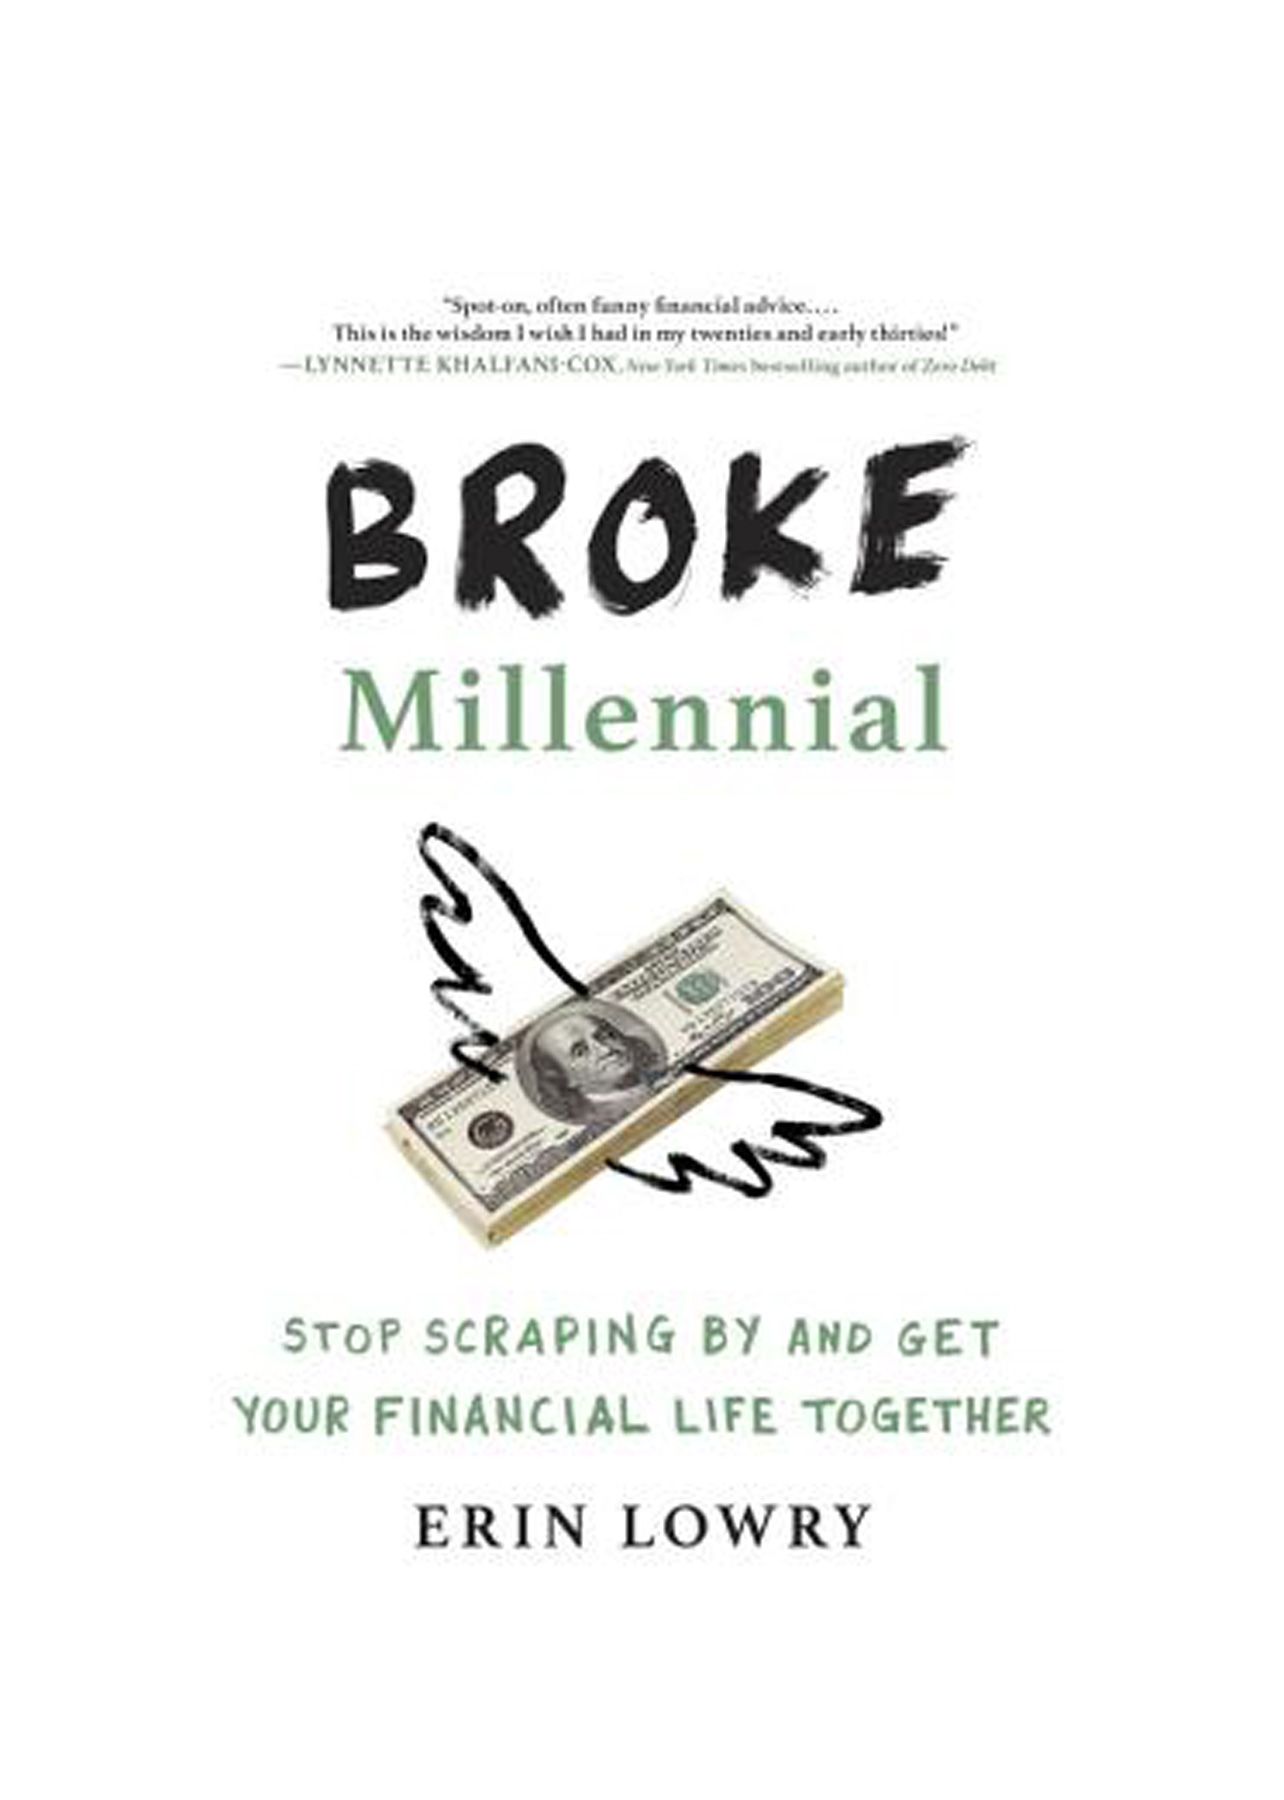 Хорошие книги для чтения в 20 лет: Эрин Лоури «Разоренное тысячелетие: перестаньте суетиться и соберите свою финансовую жизнь».